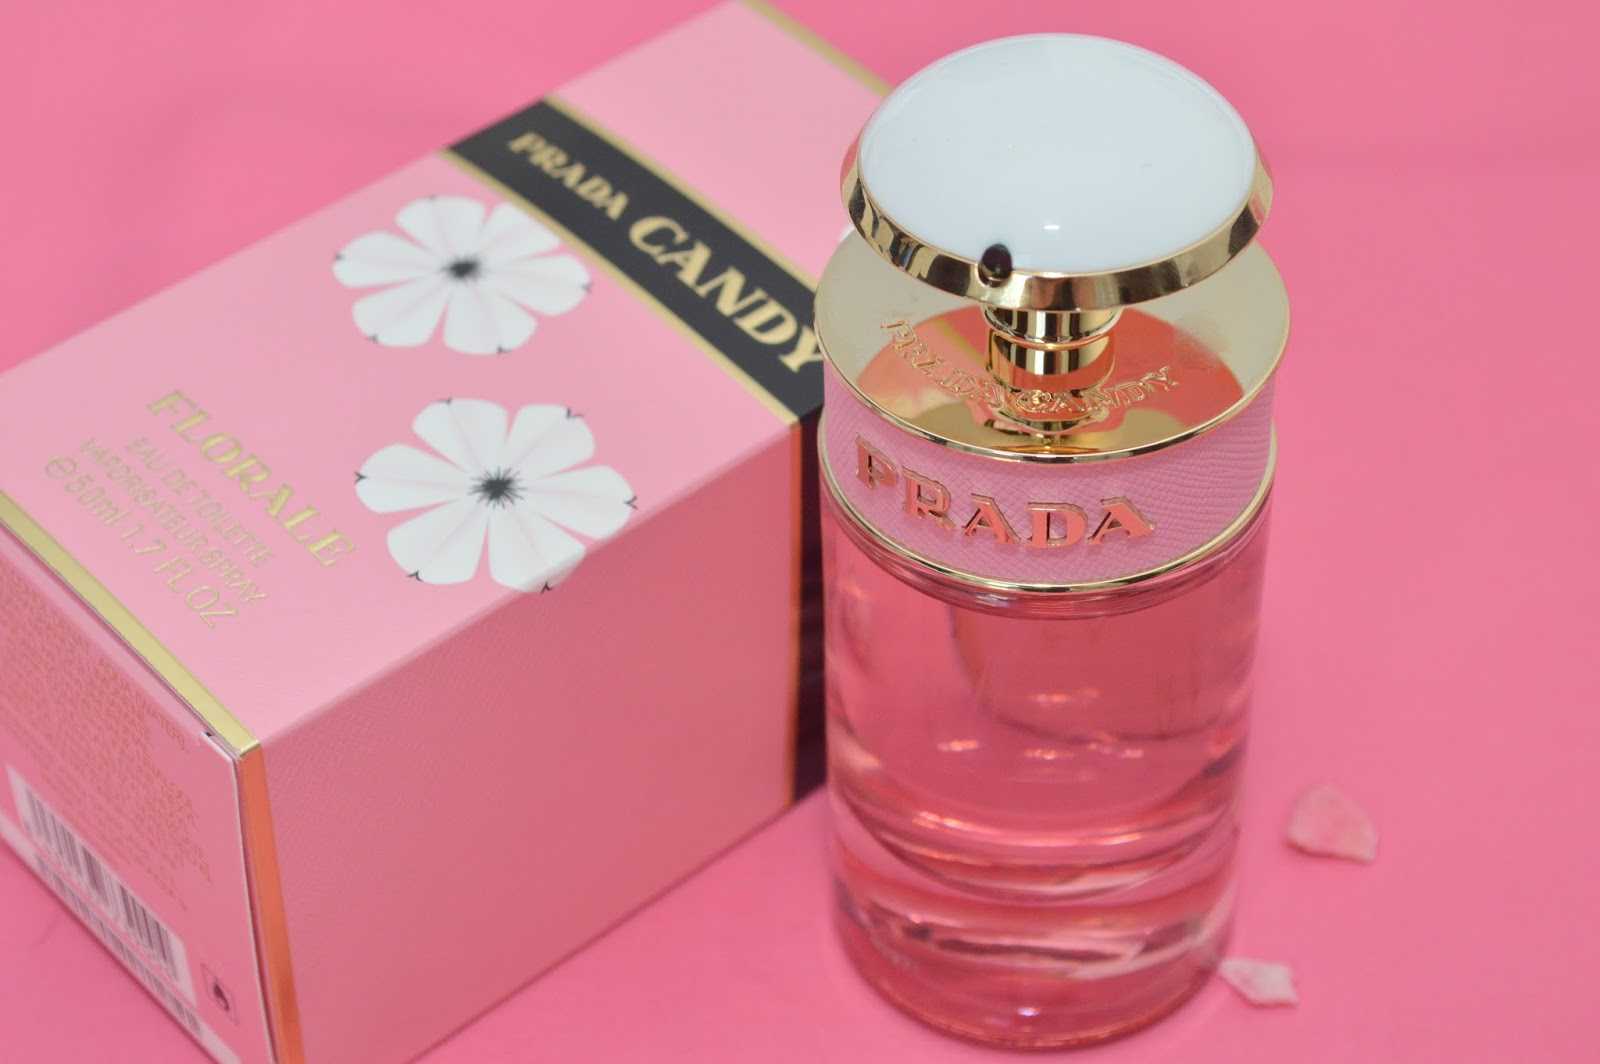 Prada  candy l'eau - описание аромата, отзывы и рекомендации по выбору